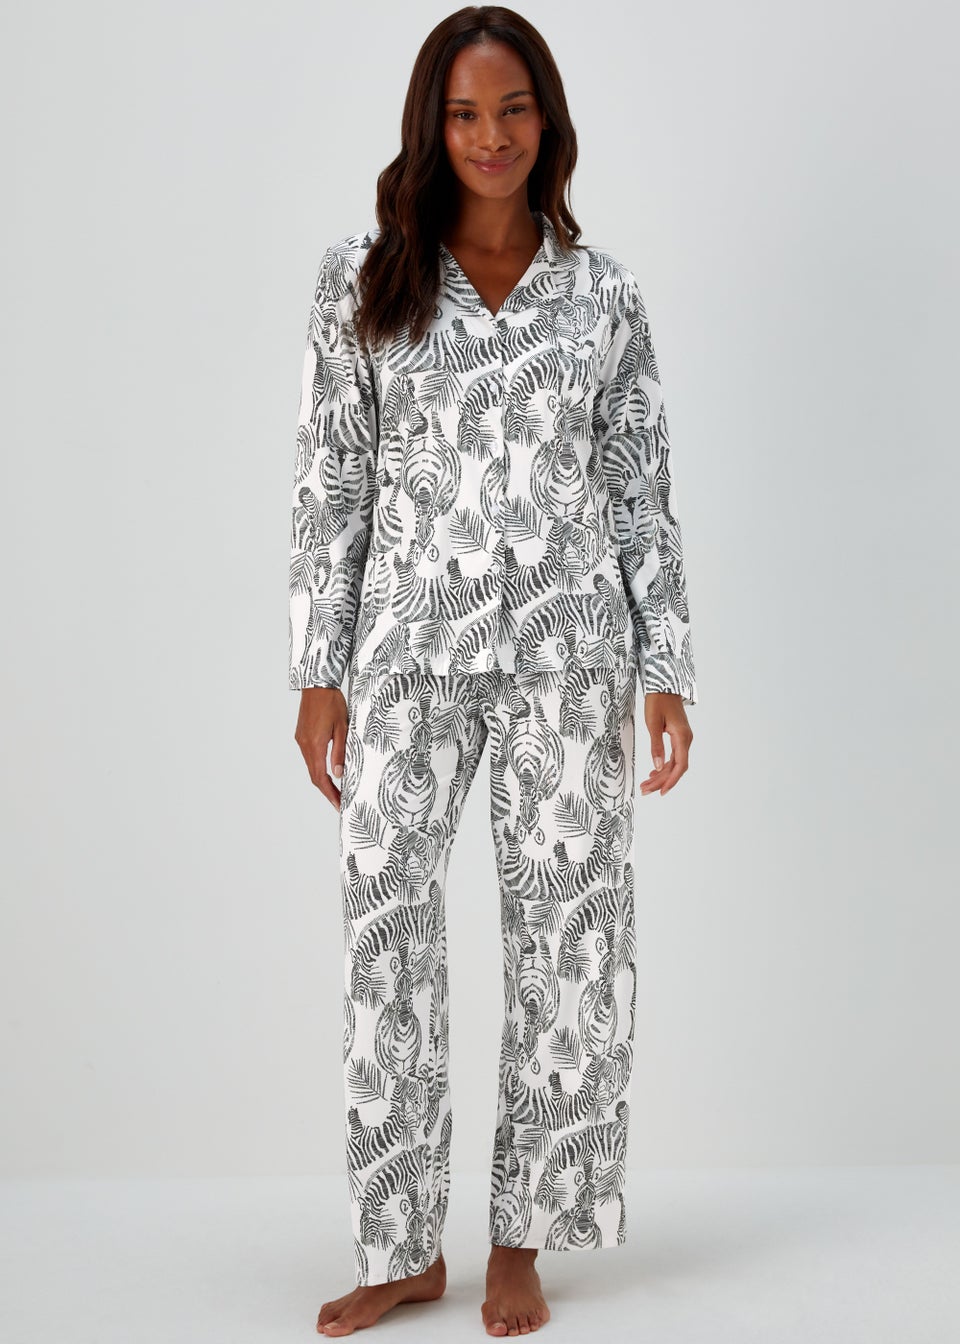 Cream Zebra Print Pyjama Set - Matalan